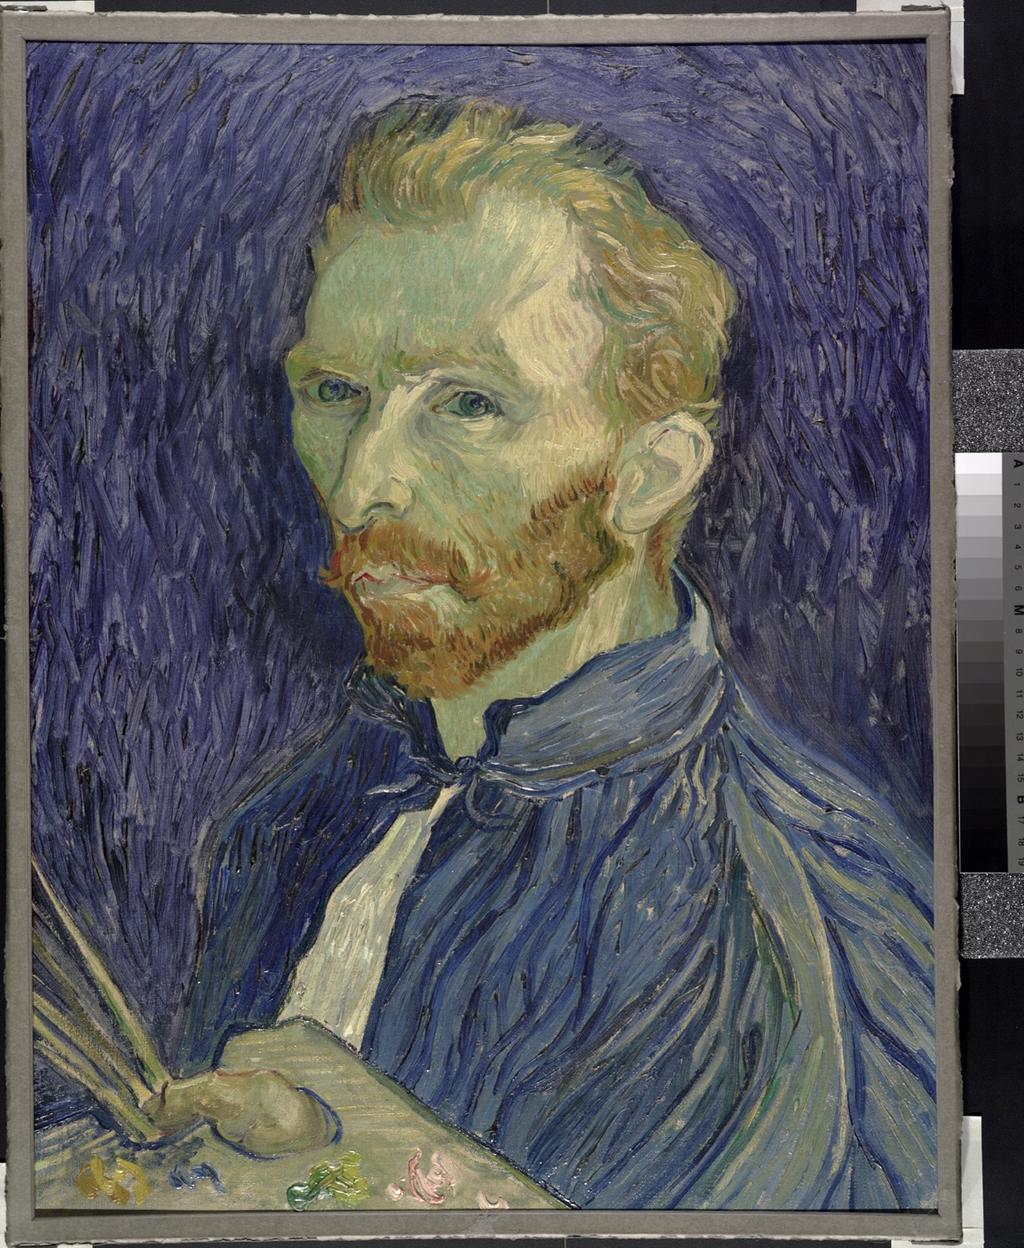 Figure 8. Vincent van Gogh, Self-Portrait.